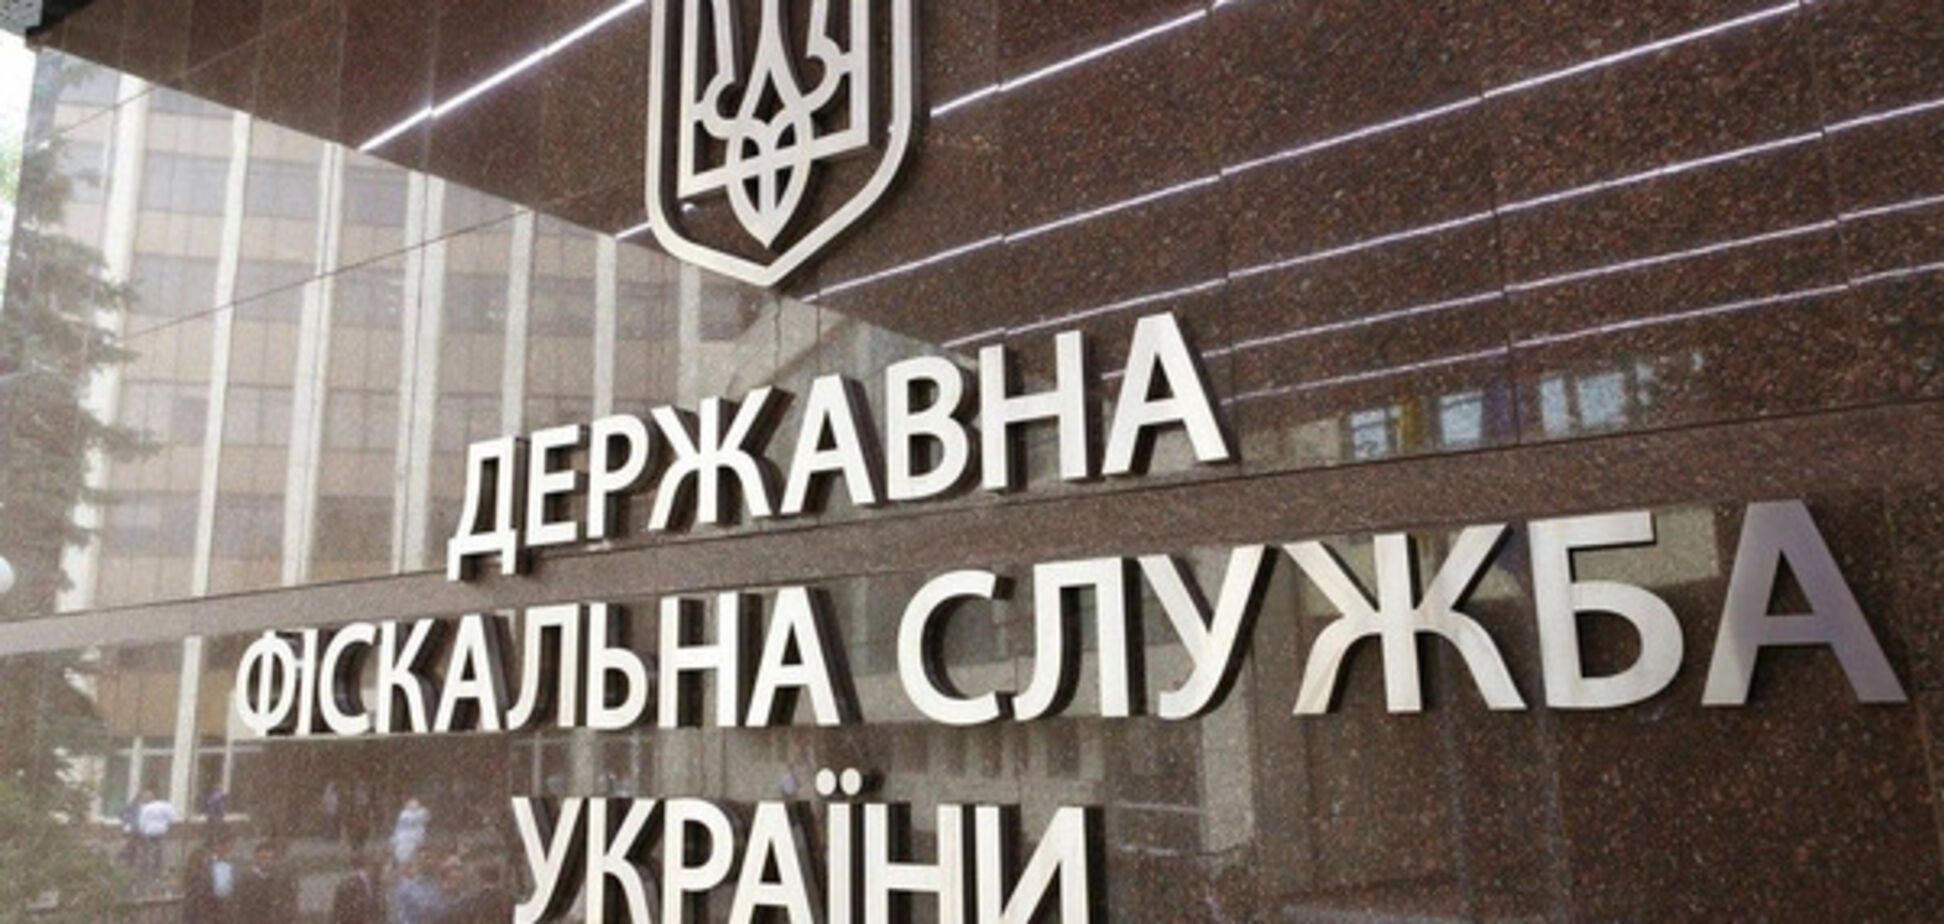 Суды ГФС с иностранными инвесторами могут ухудшить бизнес-климат Украины - СМИ